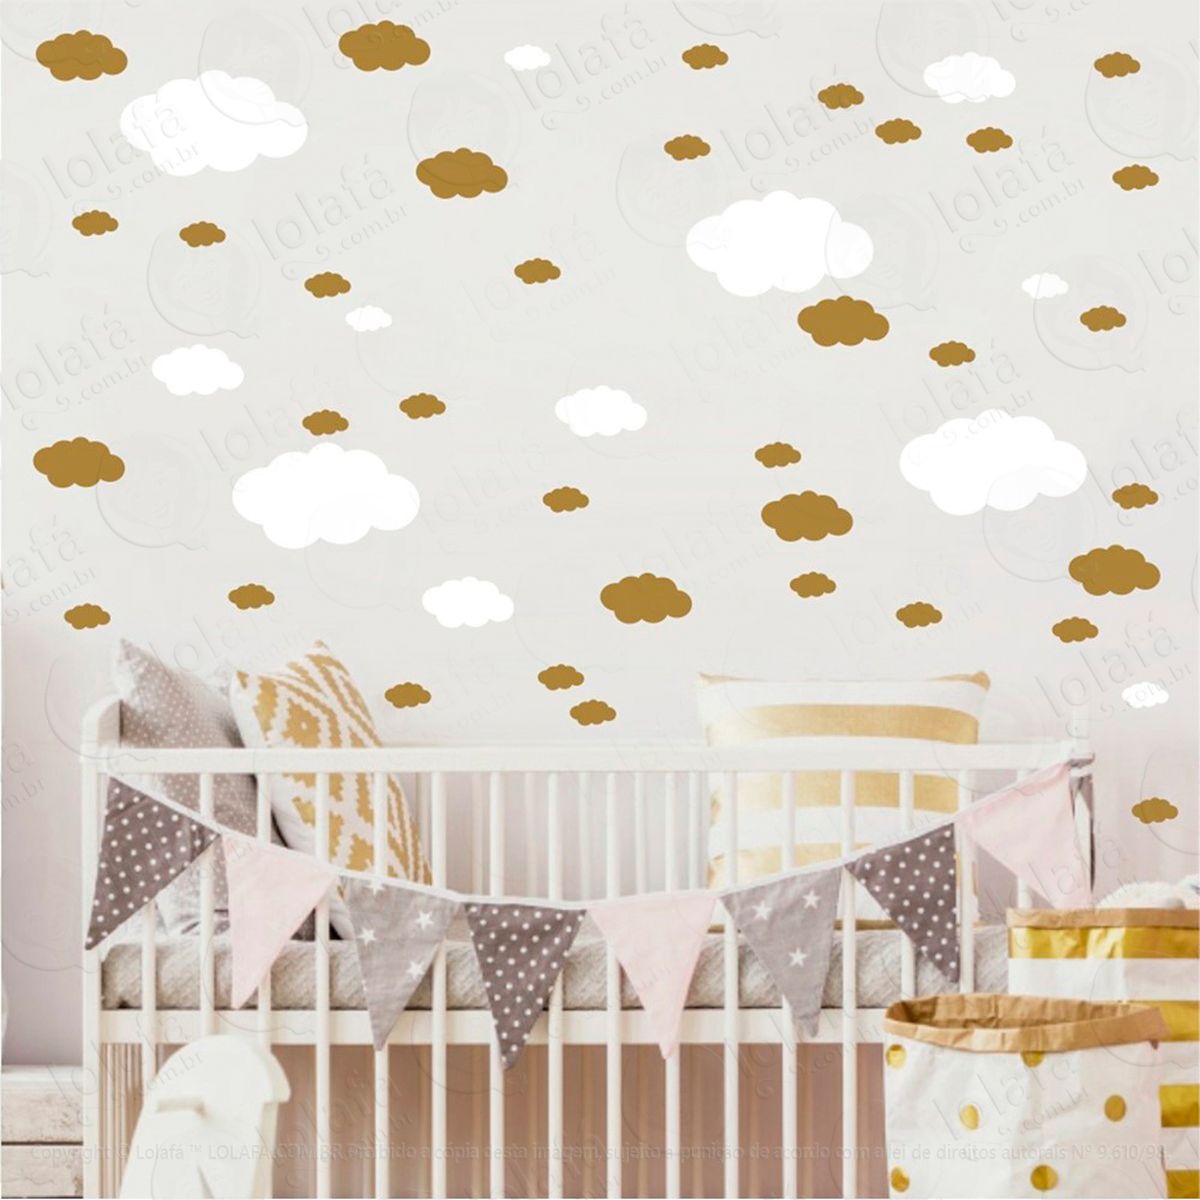 adesivos nuvens 62 peças adesivos para quarto de bebê infantil - mod:980